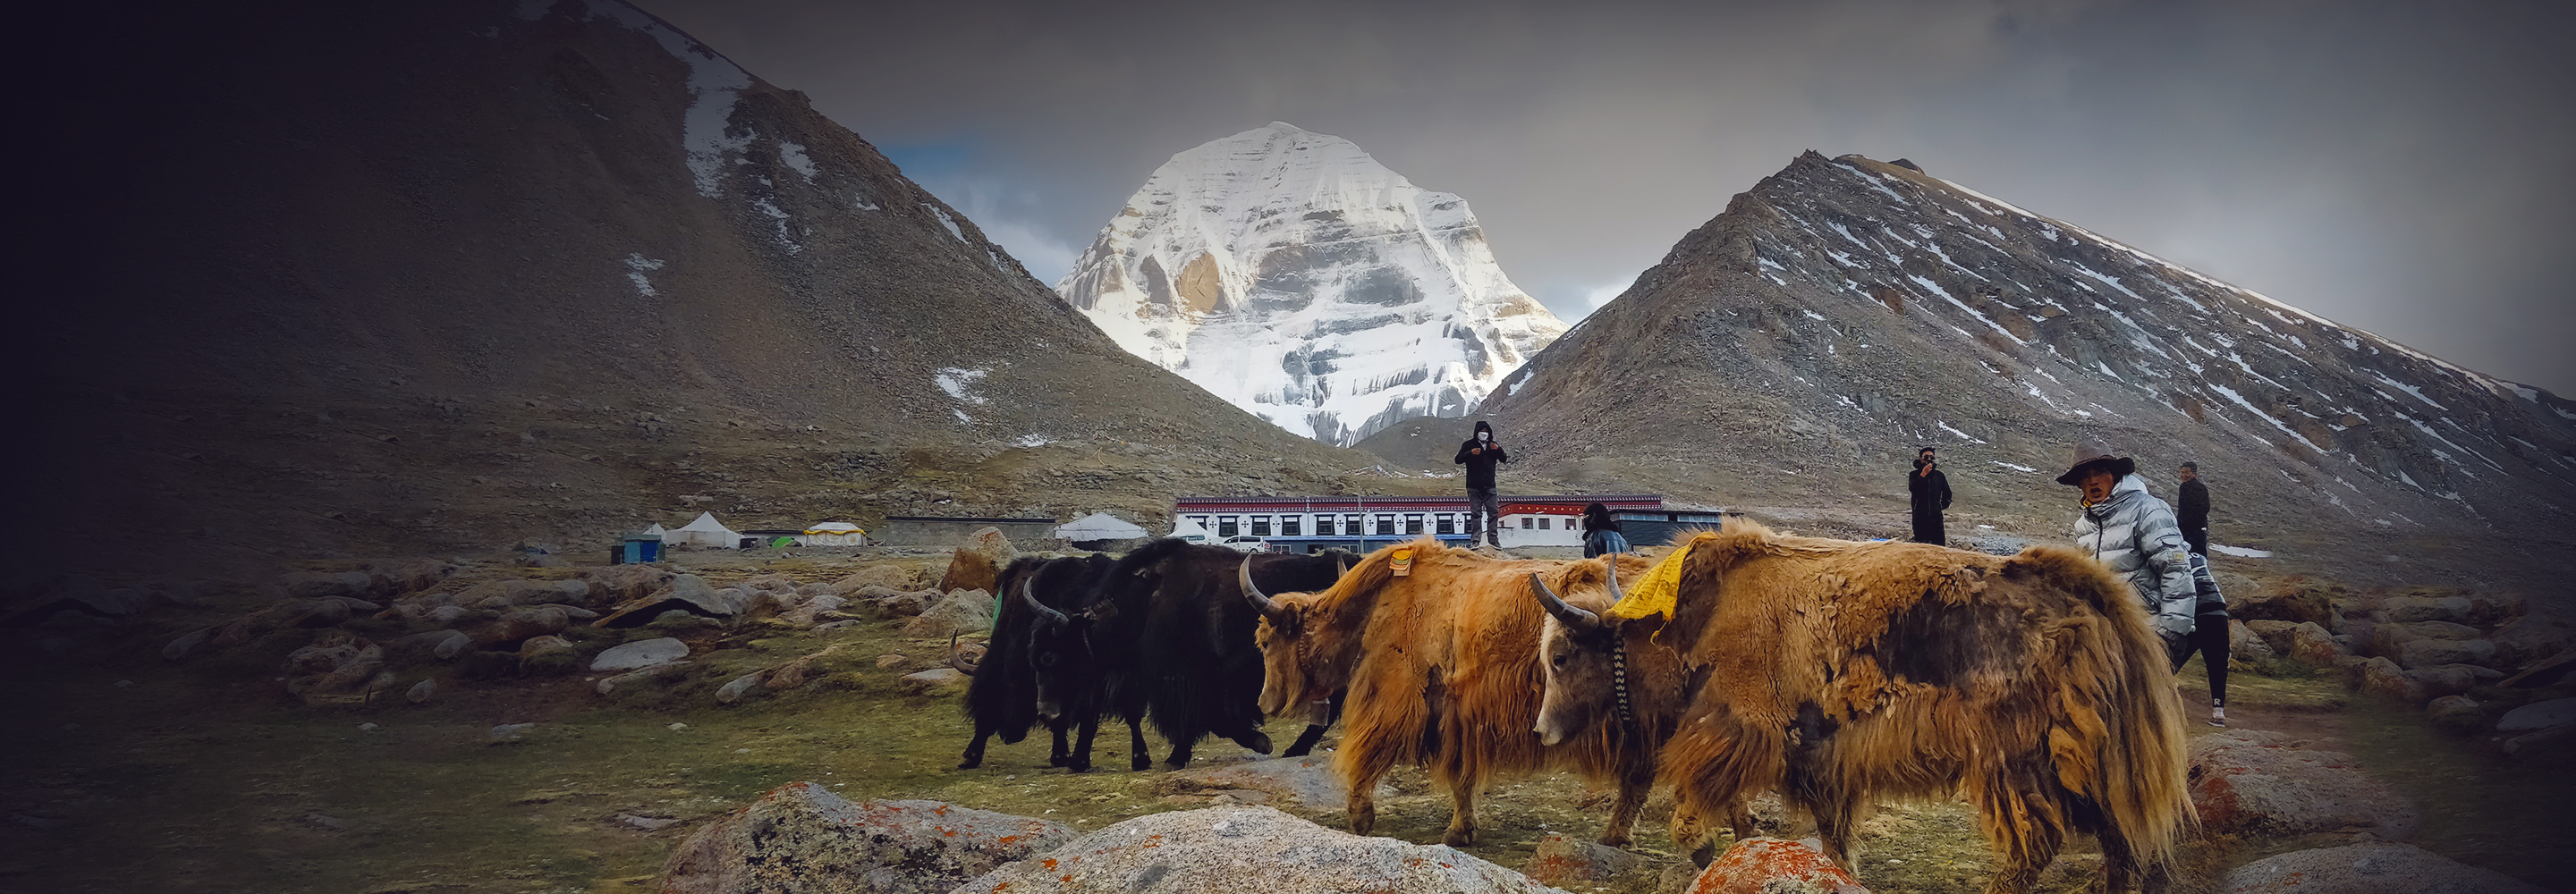 Интересные факты о Тибете: впечатления читательниц от путешествия